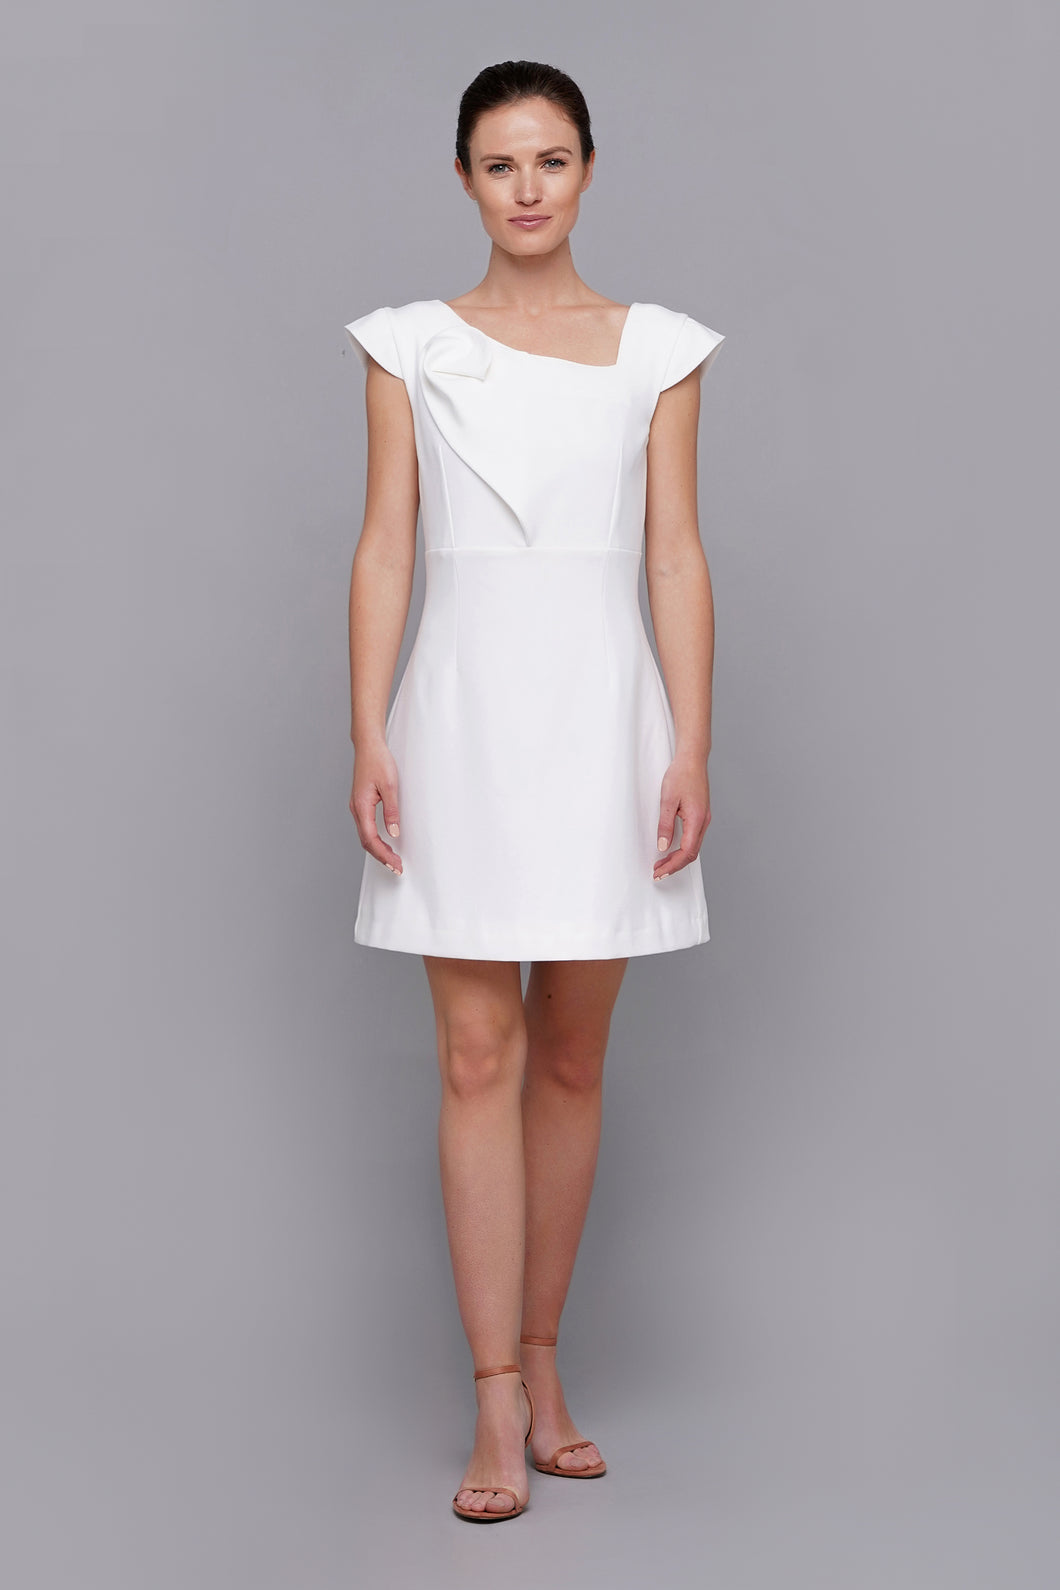 Asymmetrical white cocktail dress